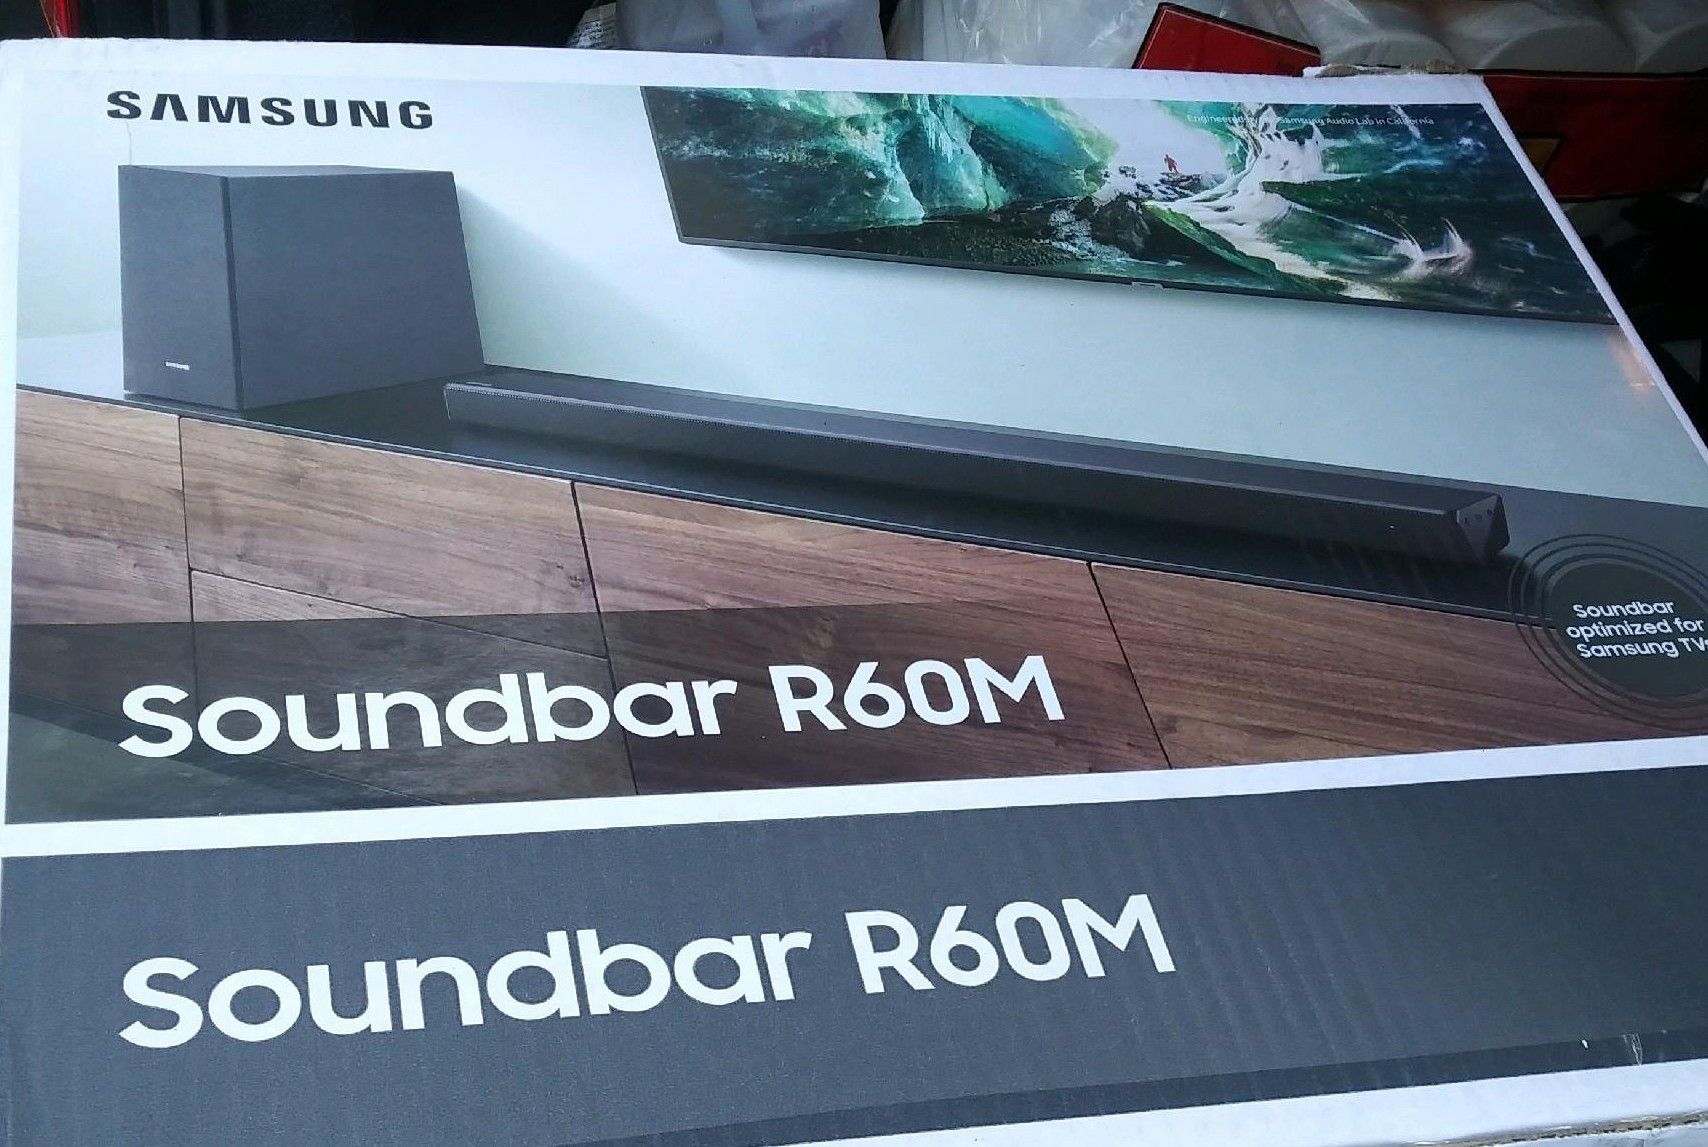 Samsung's sound bar